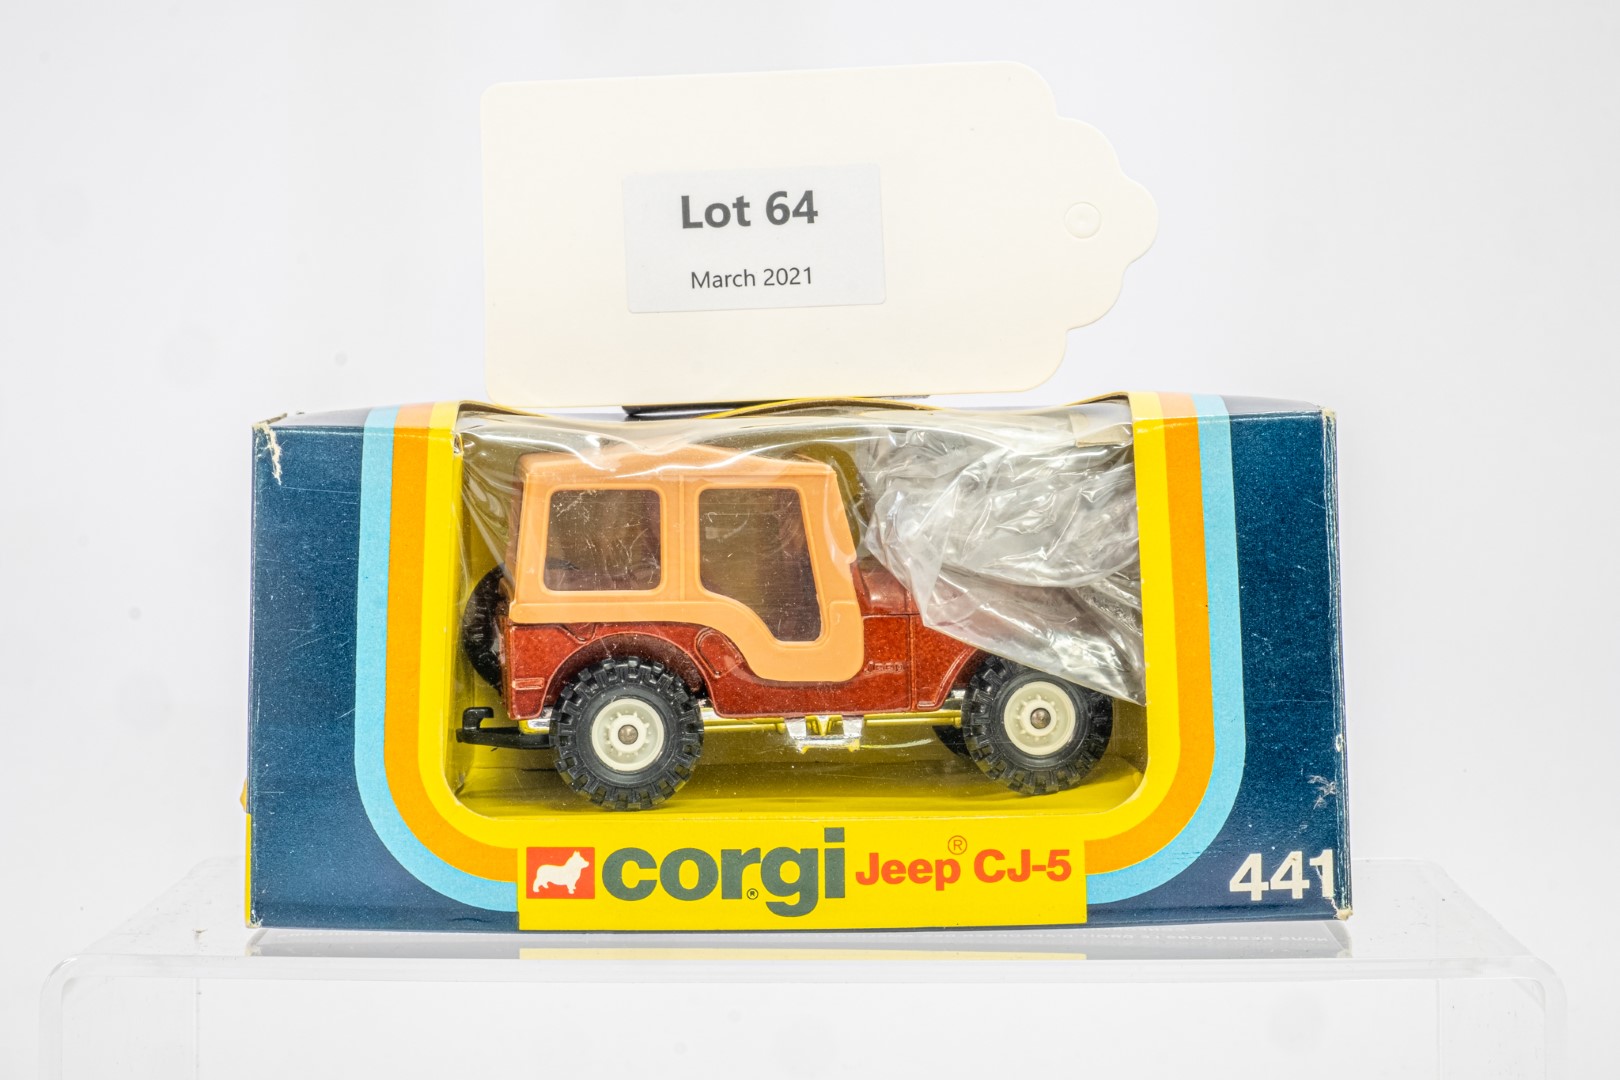 Corgi Jeep CJ-5 - Original Box